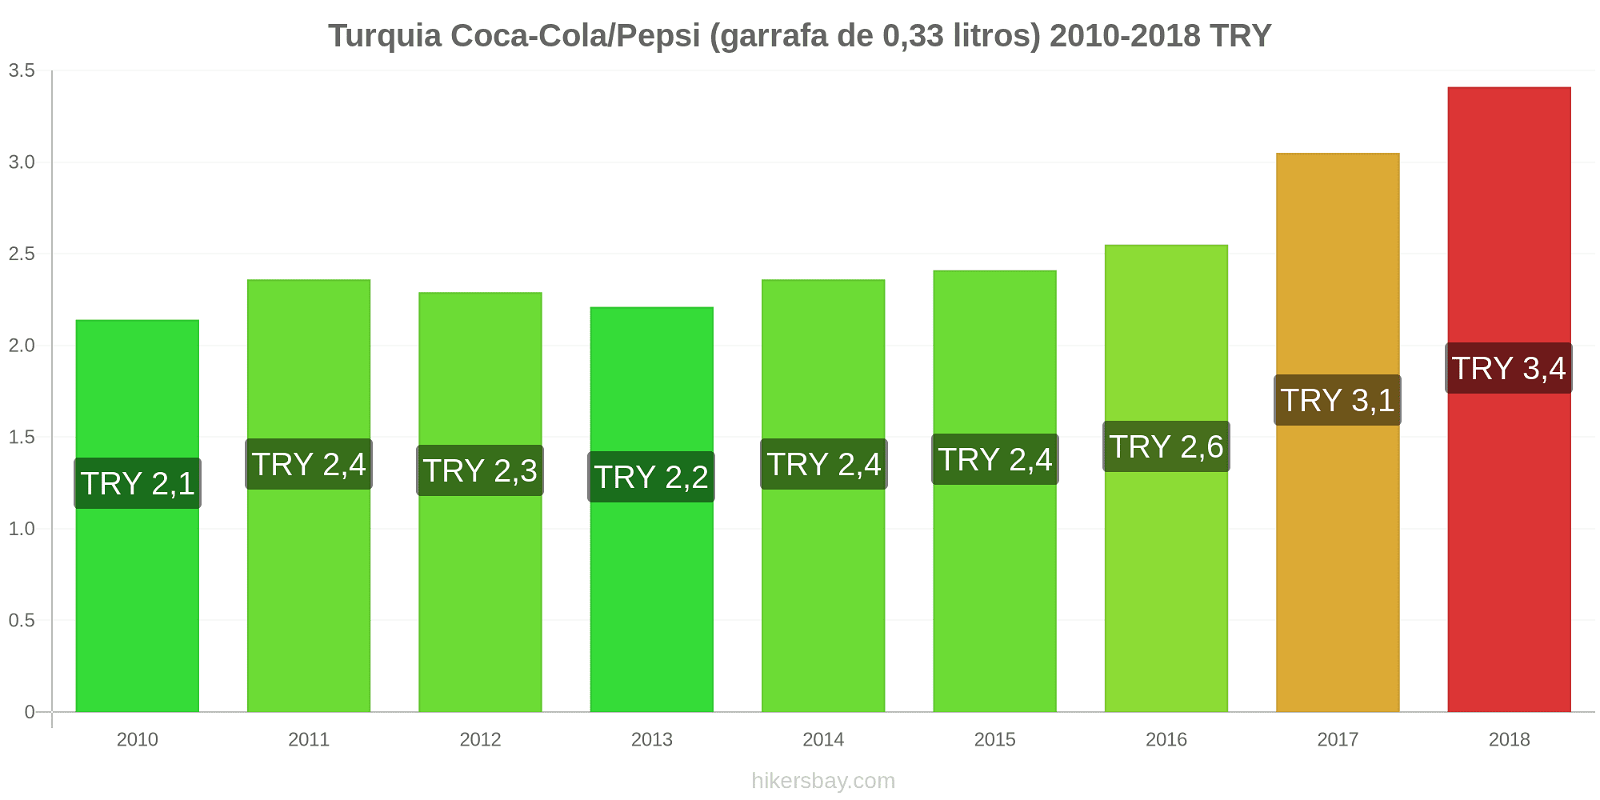 Turquia mudanças de preços Coca-Cola/Pepsi (garrafa de 0.33 litros) hikersbay.com